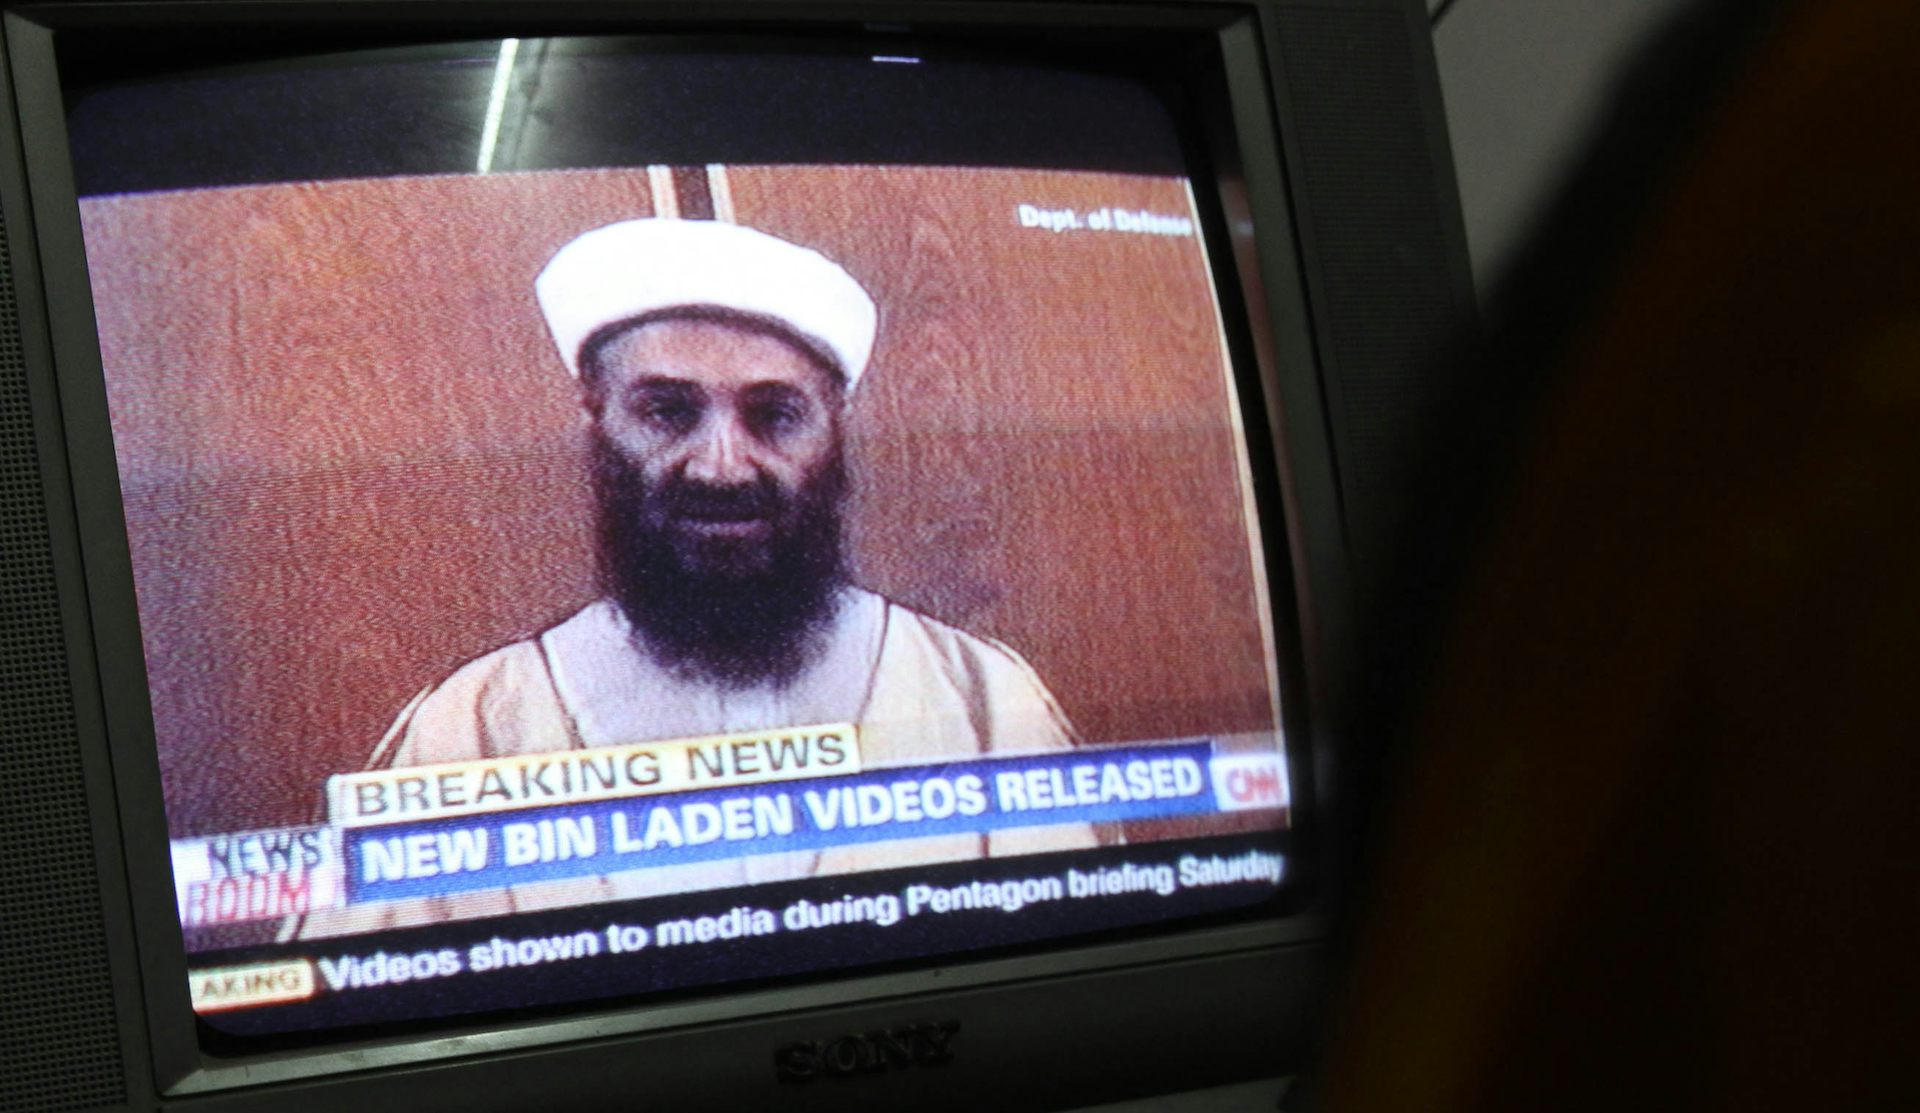  telewizor z wizerunkiem szefa al-Kaidy Osamy Bin Ladena.